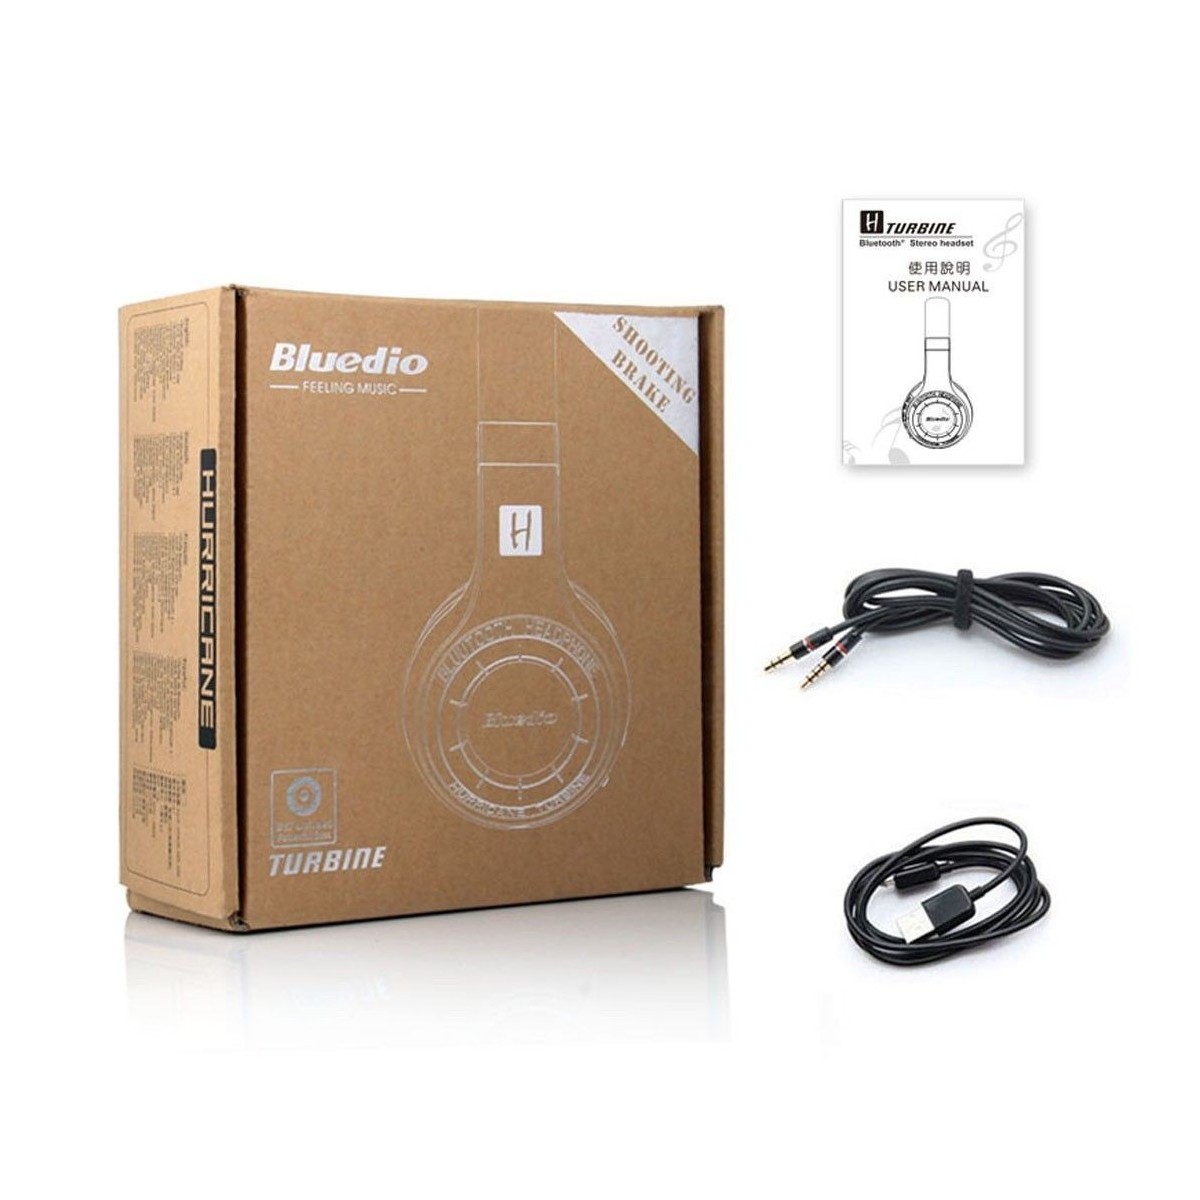 Casque Bluetooth Bluedio HT (Turbine) stéréo sans fil écouteur microphone intégré Blanc